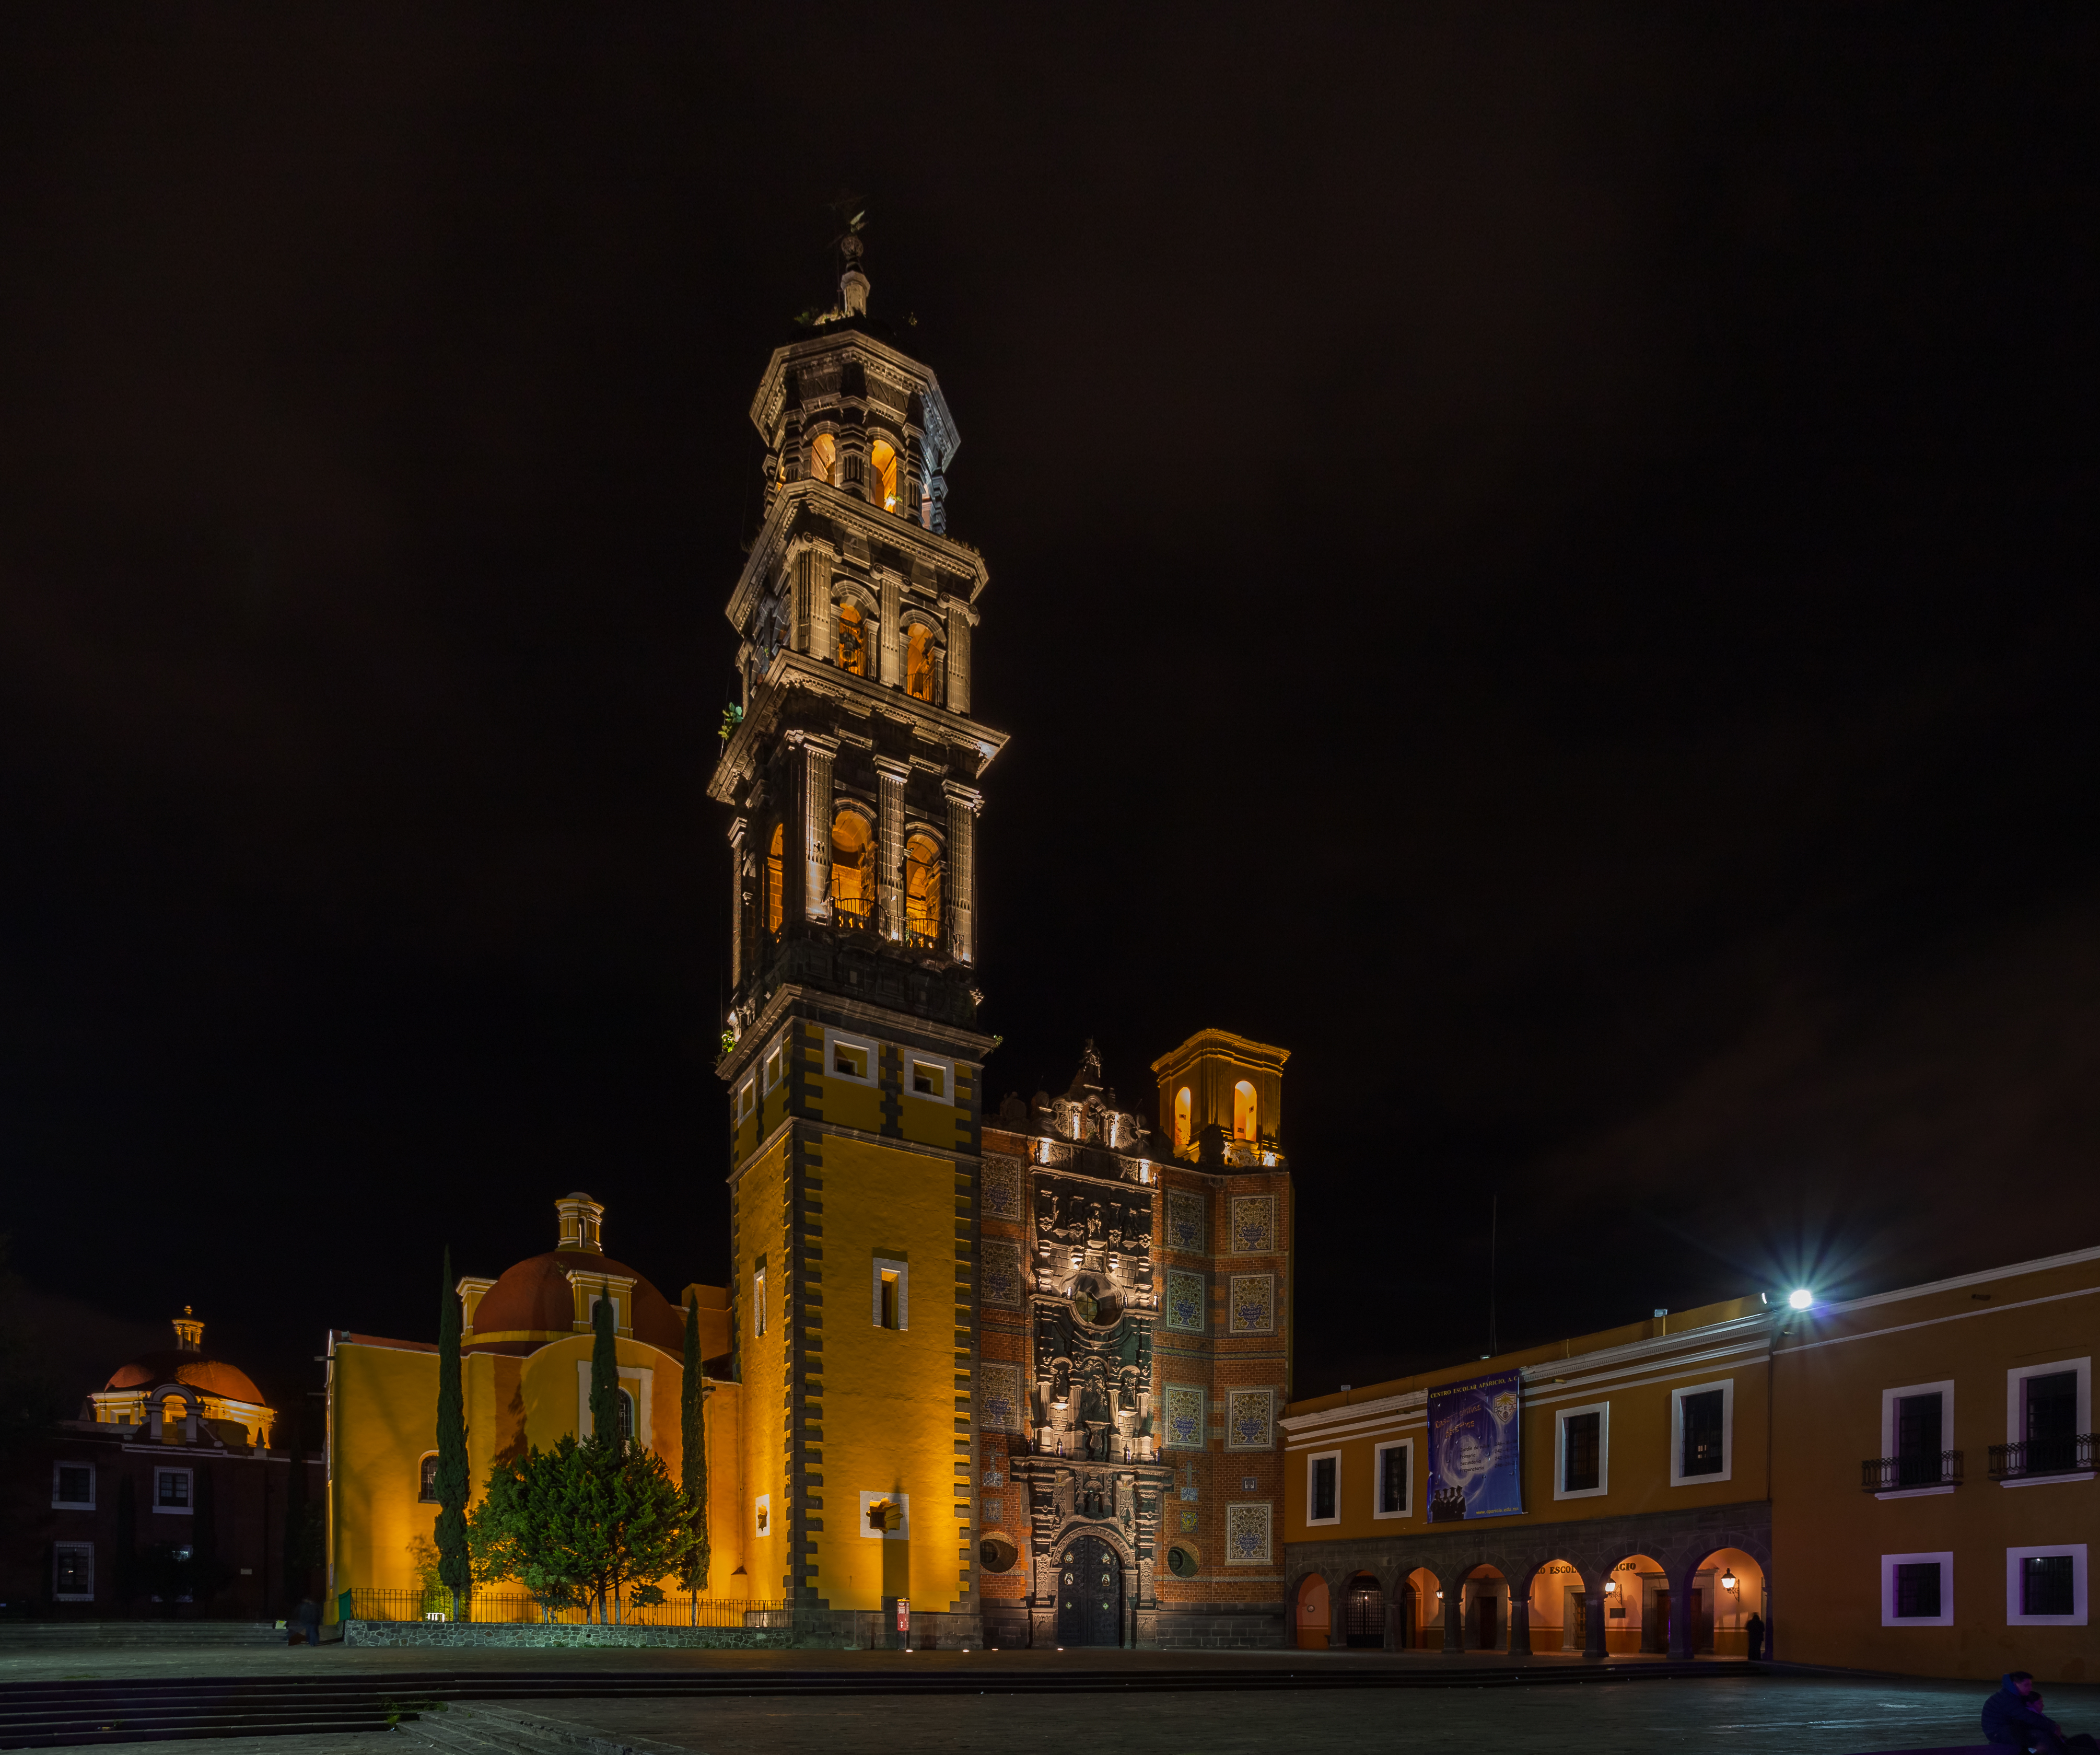 Iglesia de San Francisco, Puebla, México, 2013-10-11, DD 02